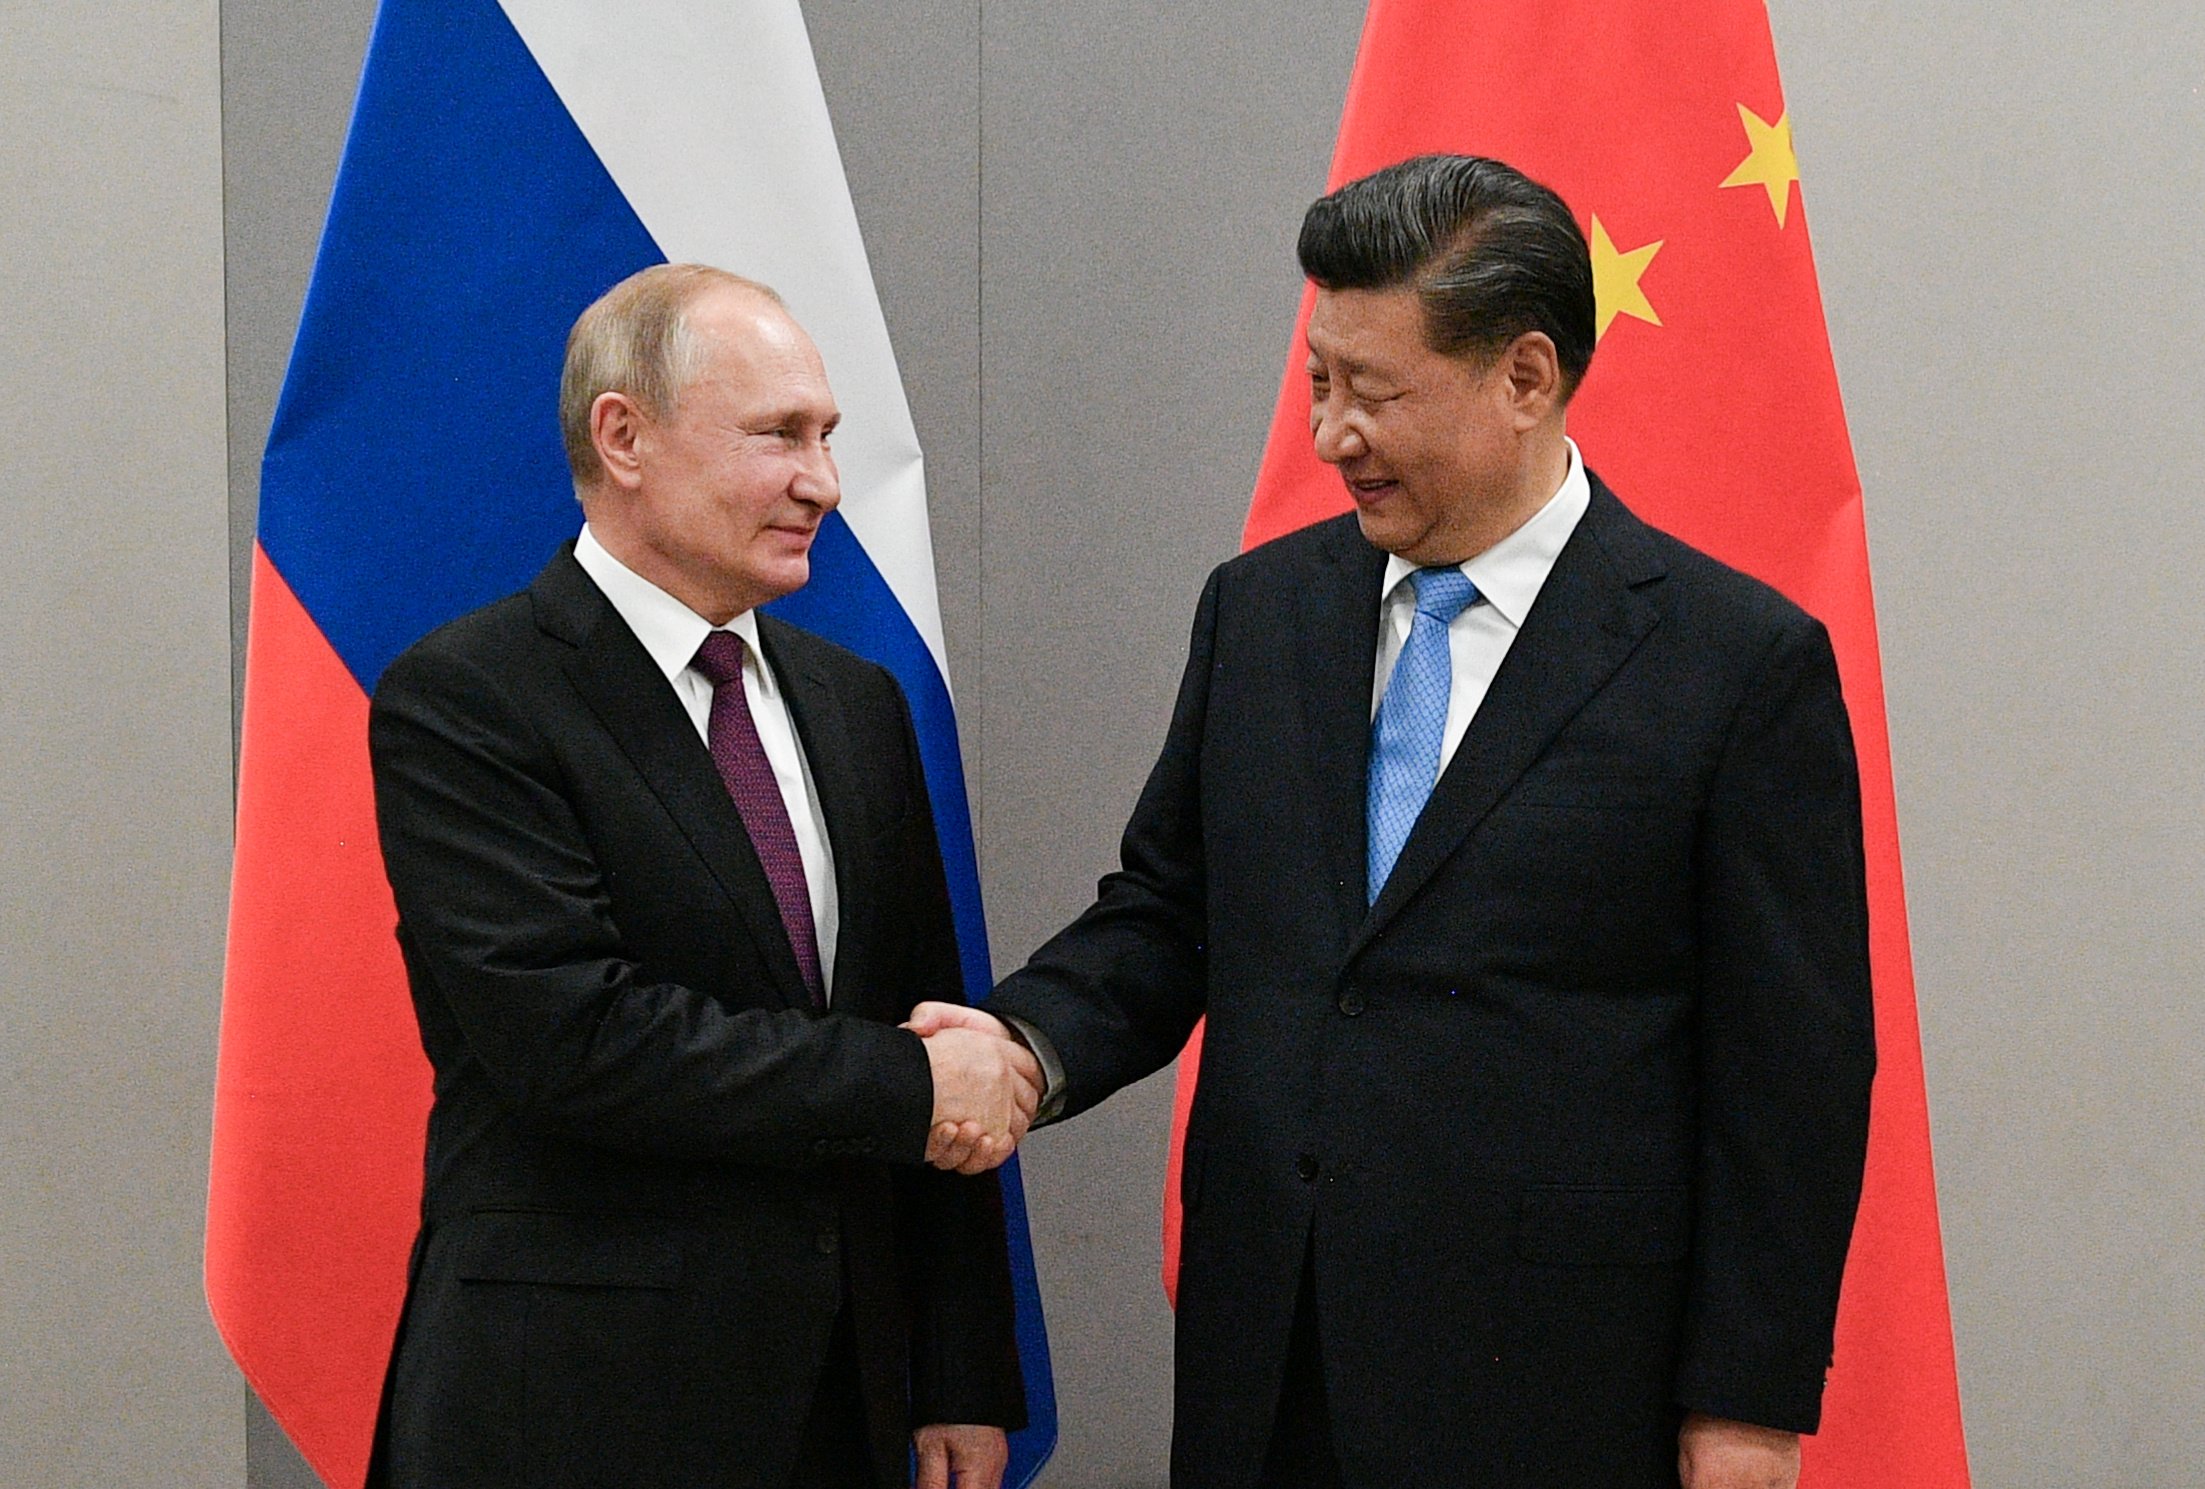  CNN: Pe măsură ce relaţiile cu Occidentul se deteriorează, Putin şi Xi îşi consolidează parteneriatul